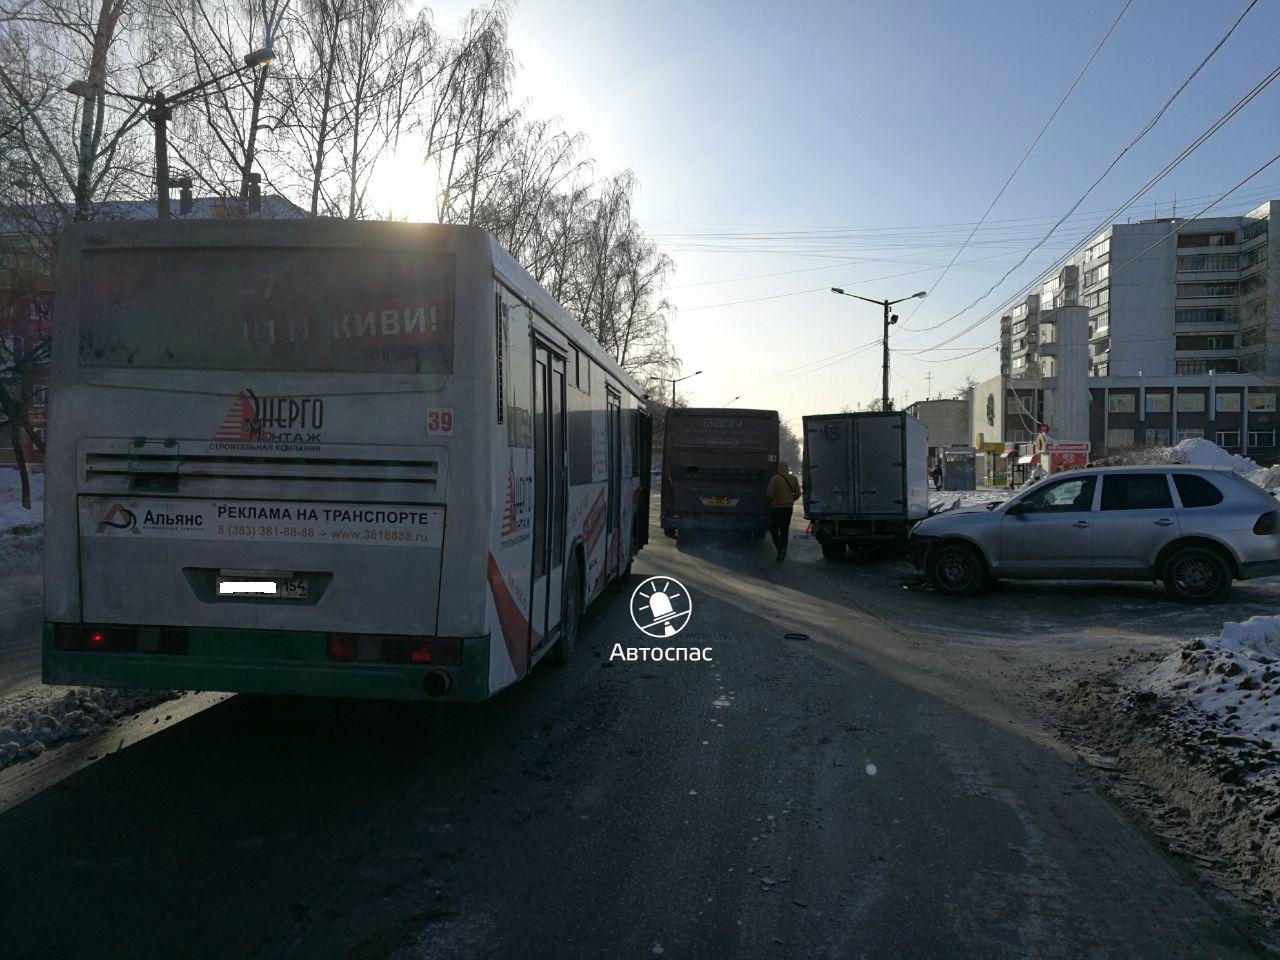 В Новосибирске произошло массовое ДТП с участием автобуса №98